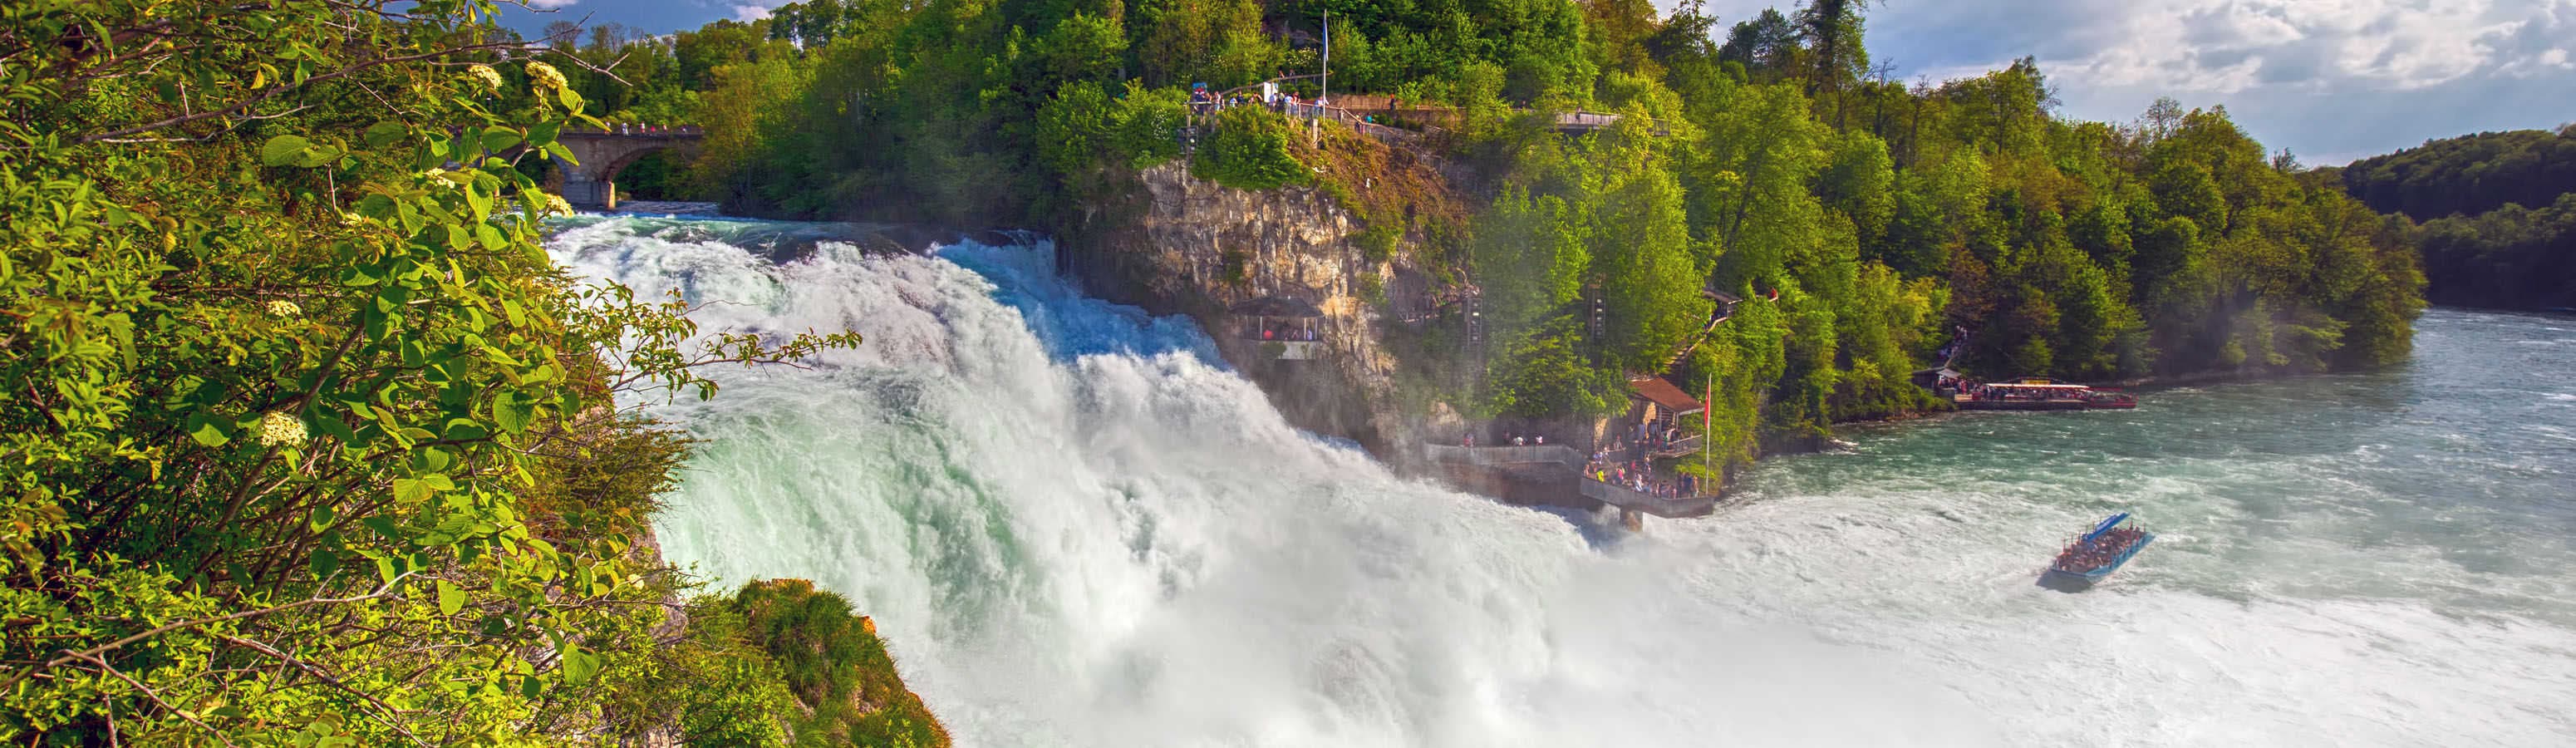 Europe's largest waterfalls - Rhine Falls